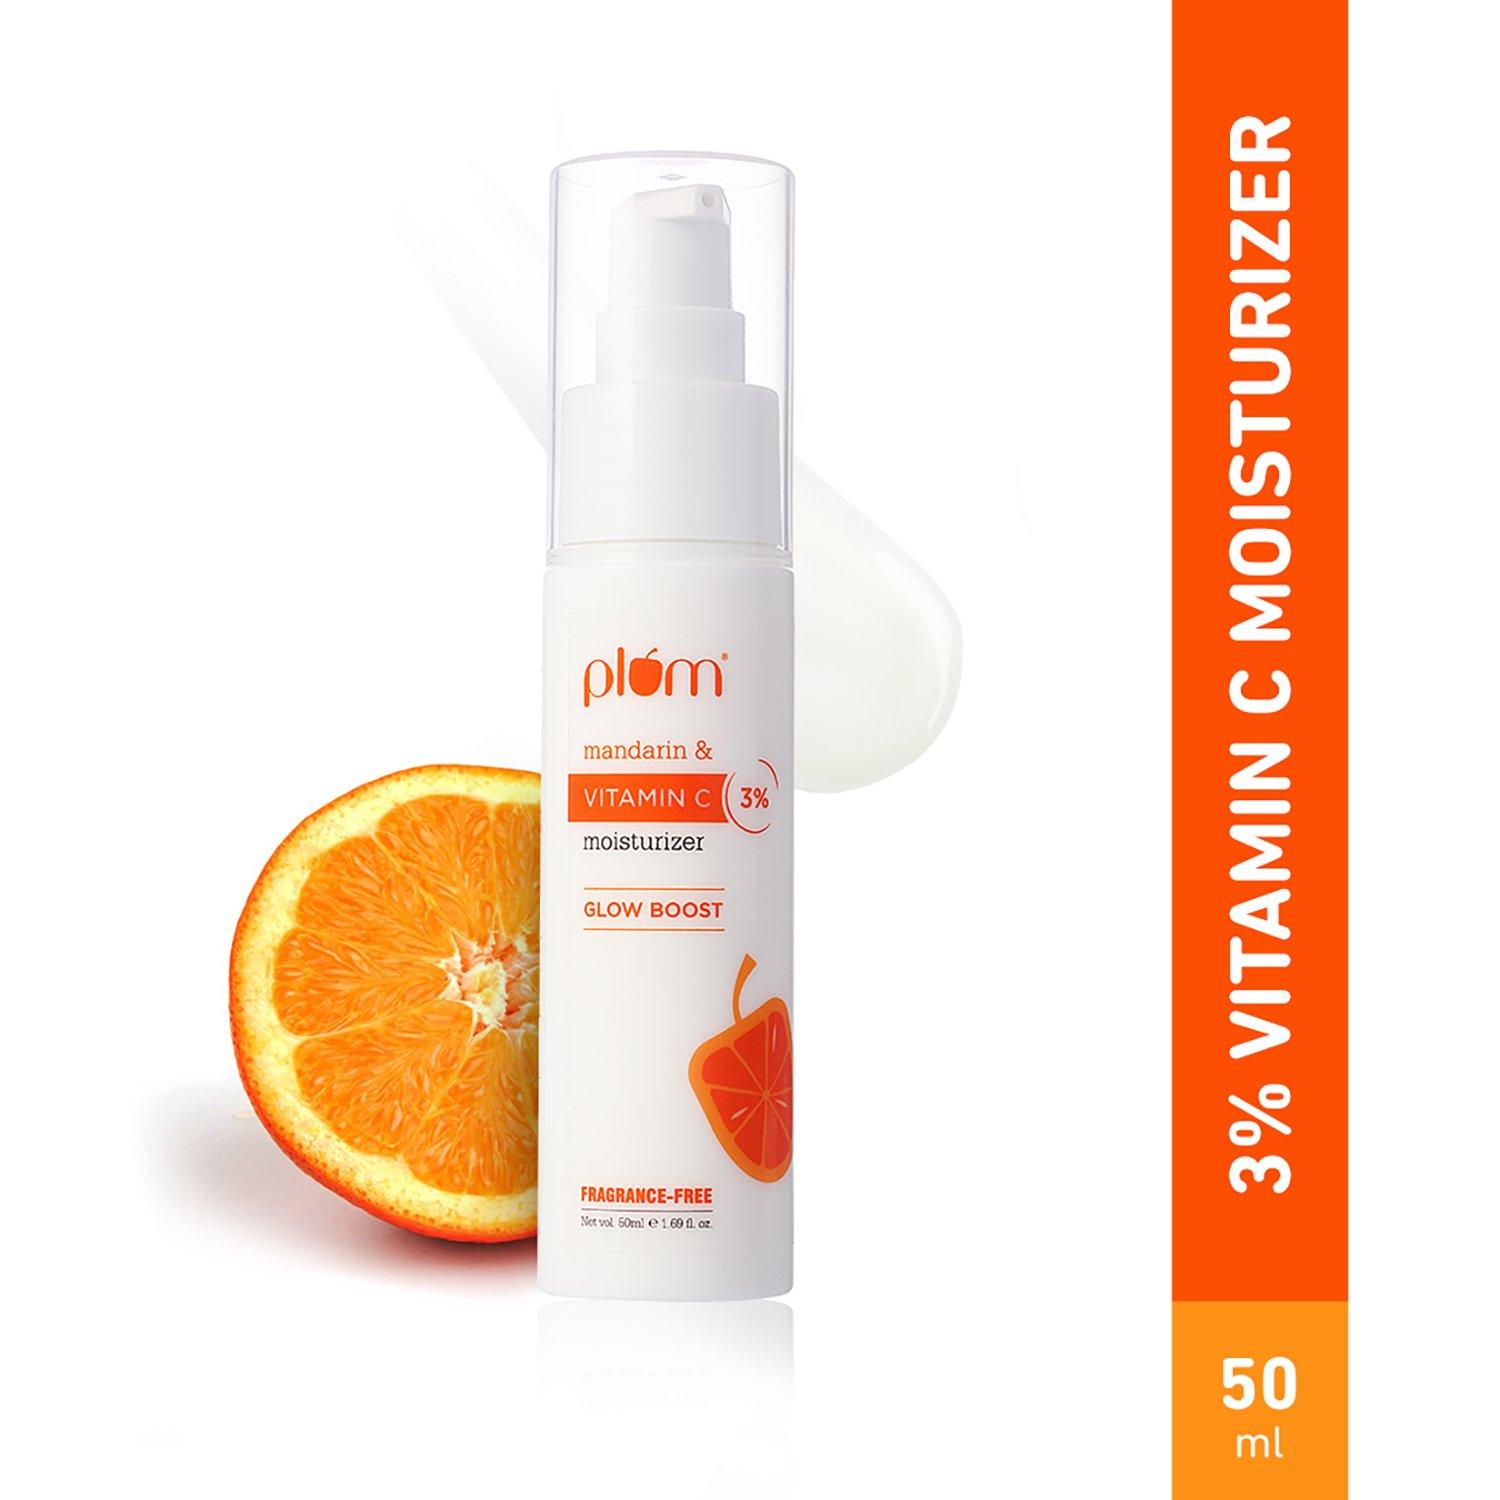 Plum | Plum Mandarin & Vitamin C 3% Moisturizer, Boosts Glow, Fades Dark Spots & Pigmentation (50ml)